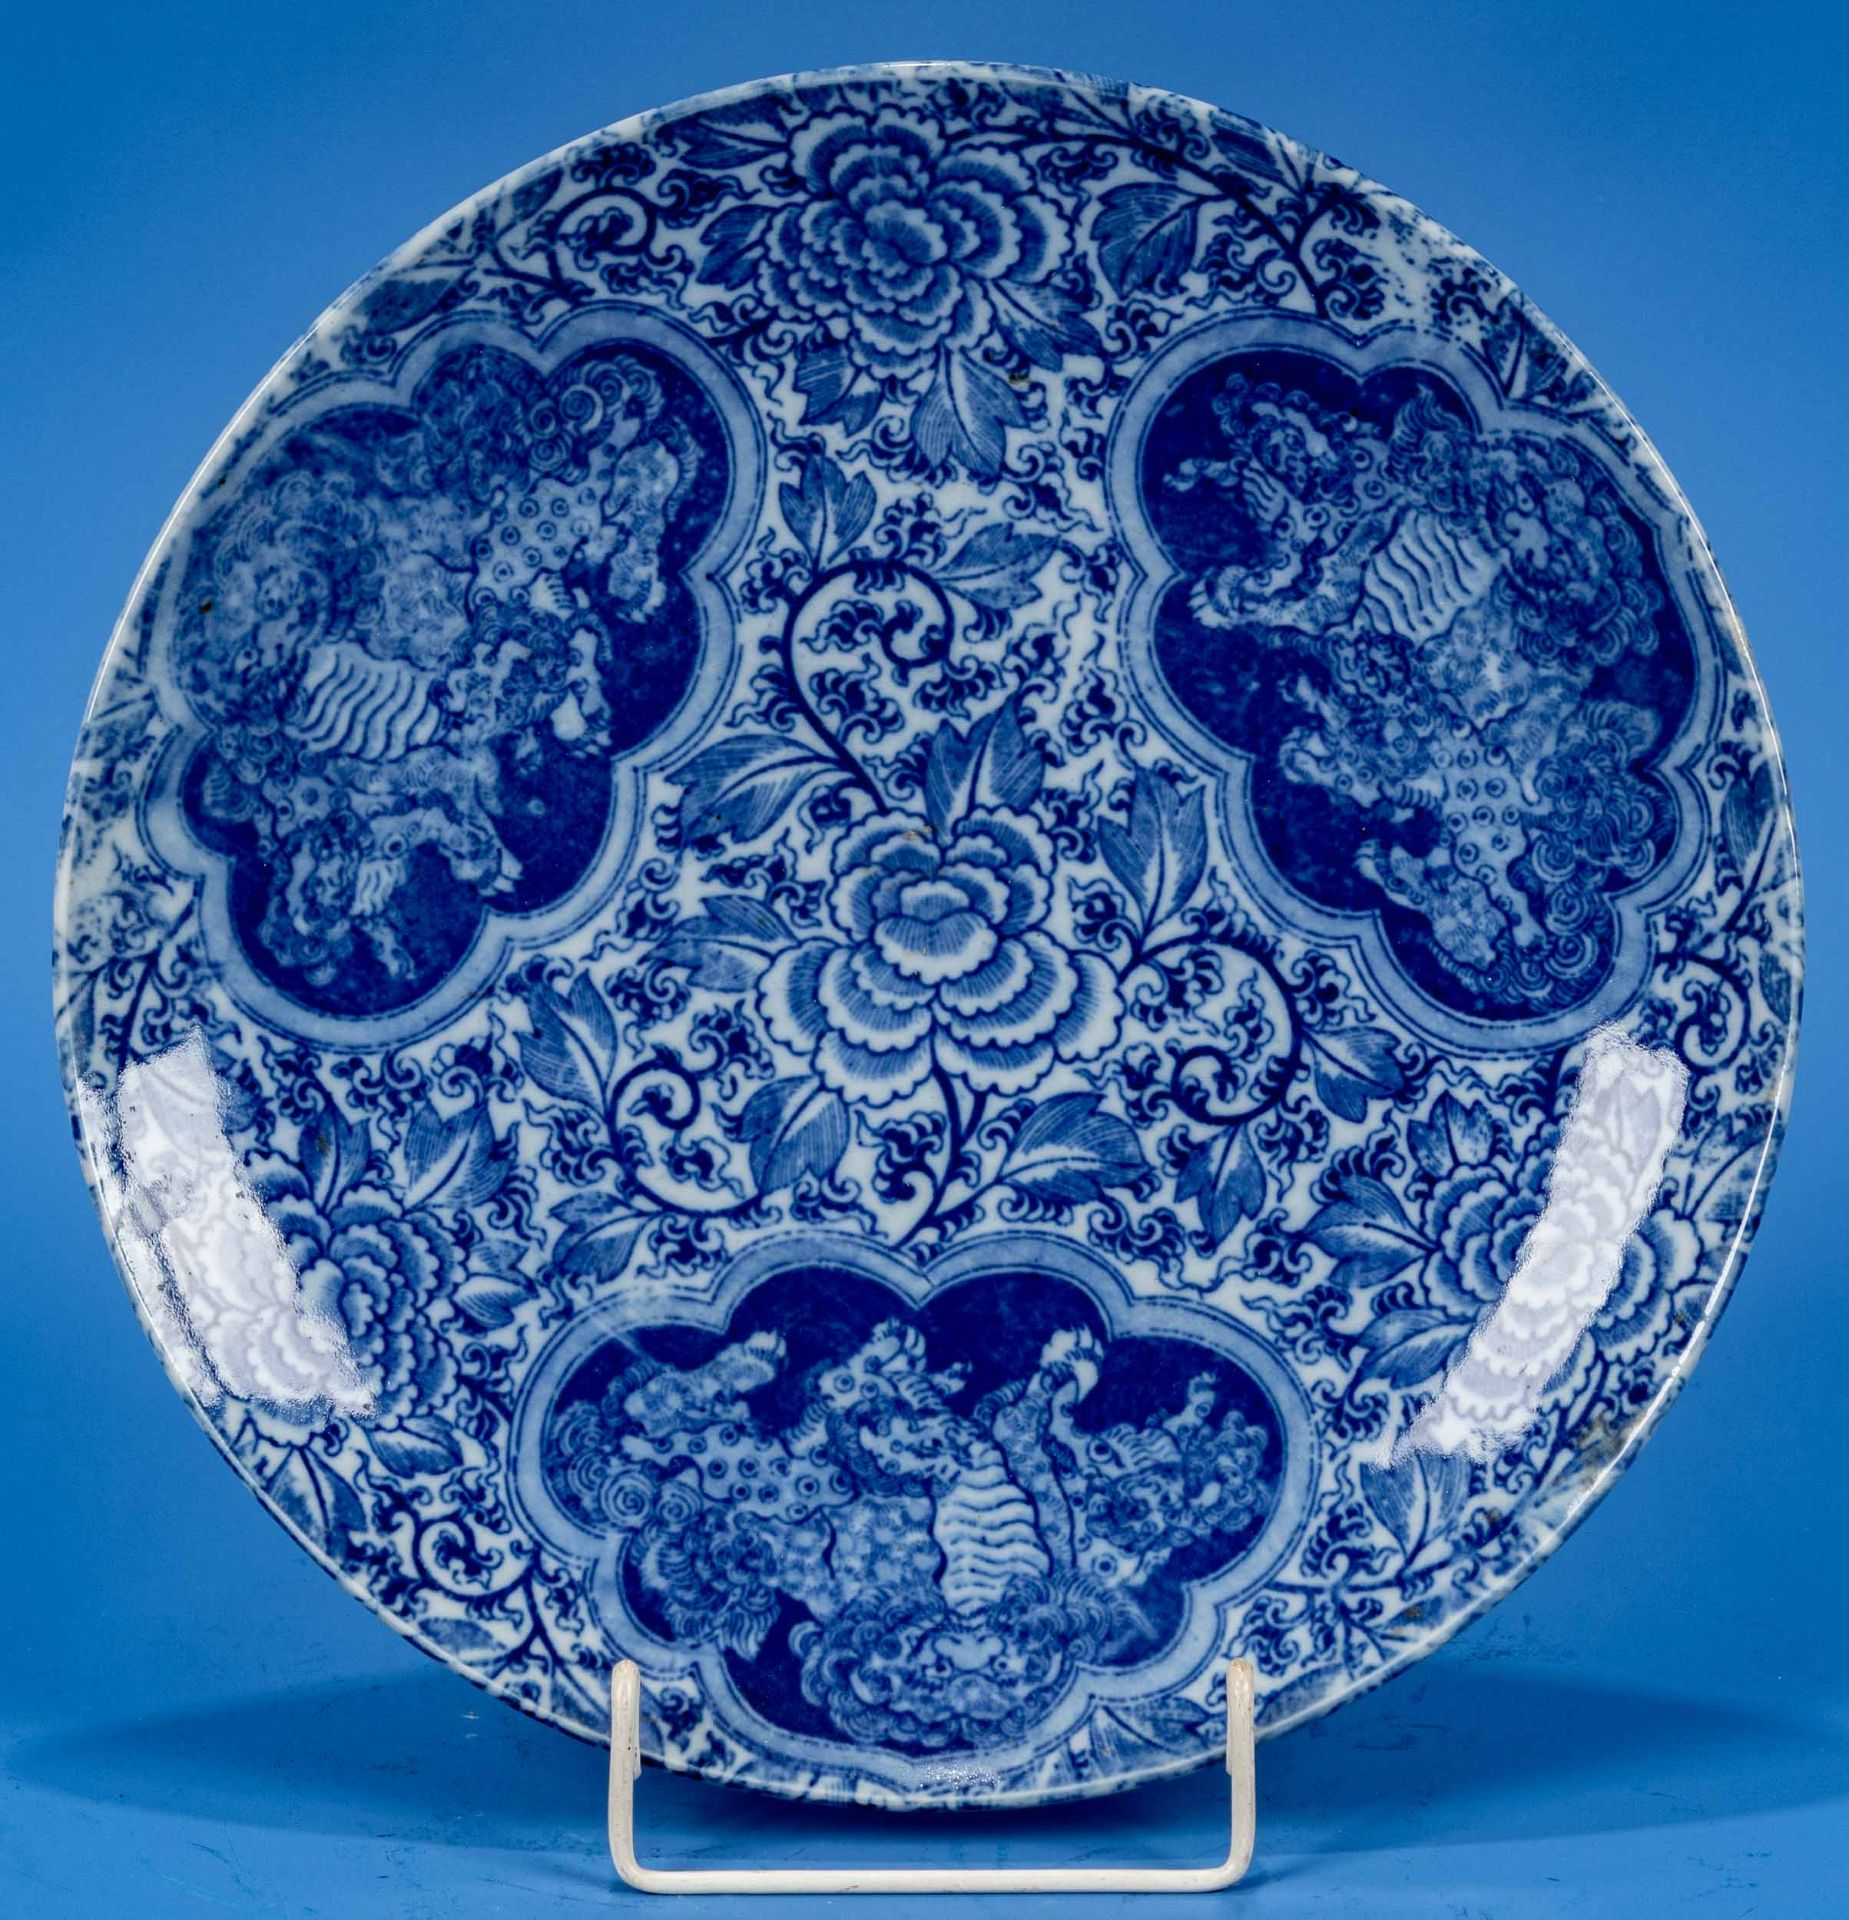 Großer runder Schauteller, China 20. Jhdt., Blaudekore, bodenseitig Vier-Zeichen-Marke in Blau; unb